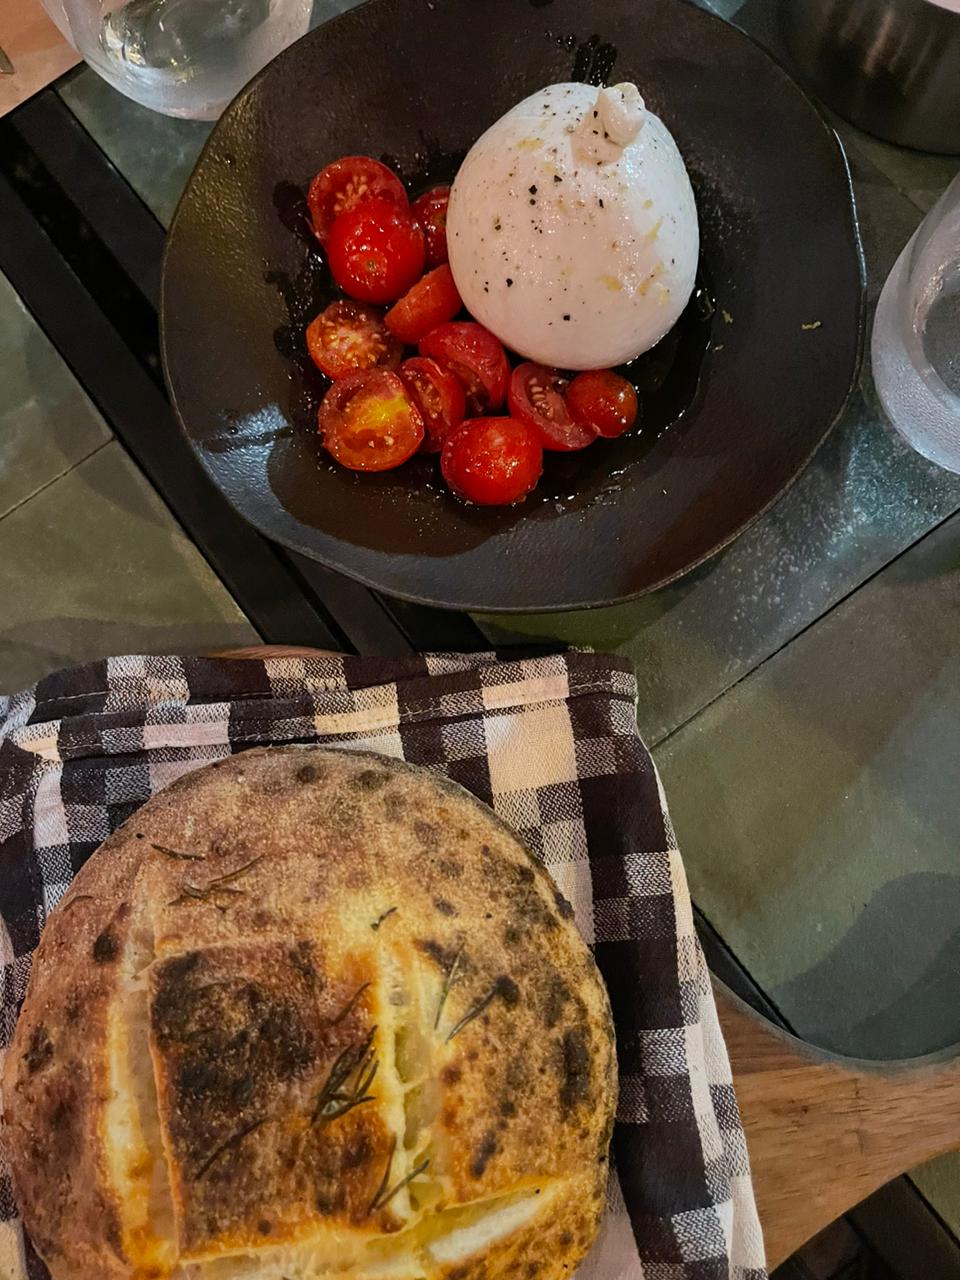 Burrata da Timo: Burrata com tomates confitados com raspas de limão siciliano, acompanha pão da casa. 